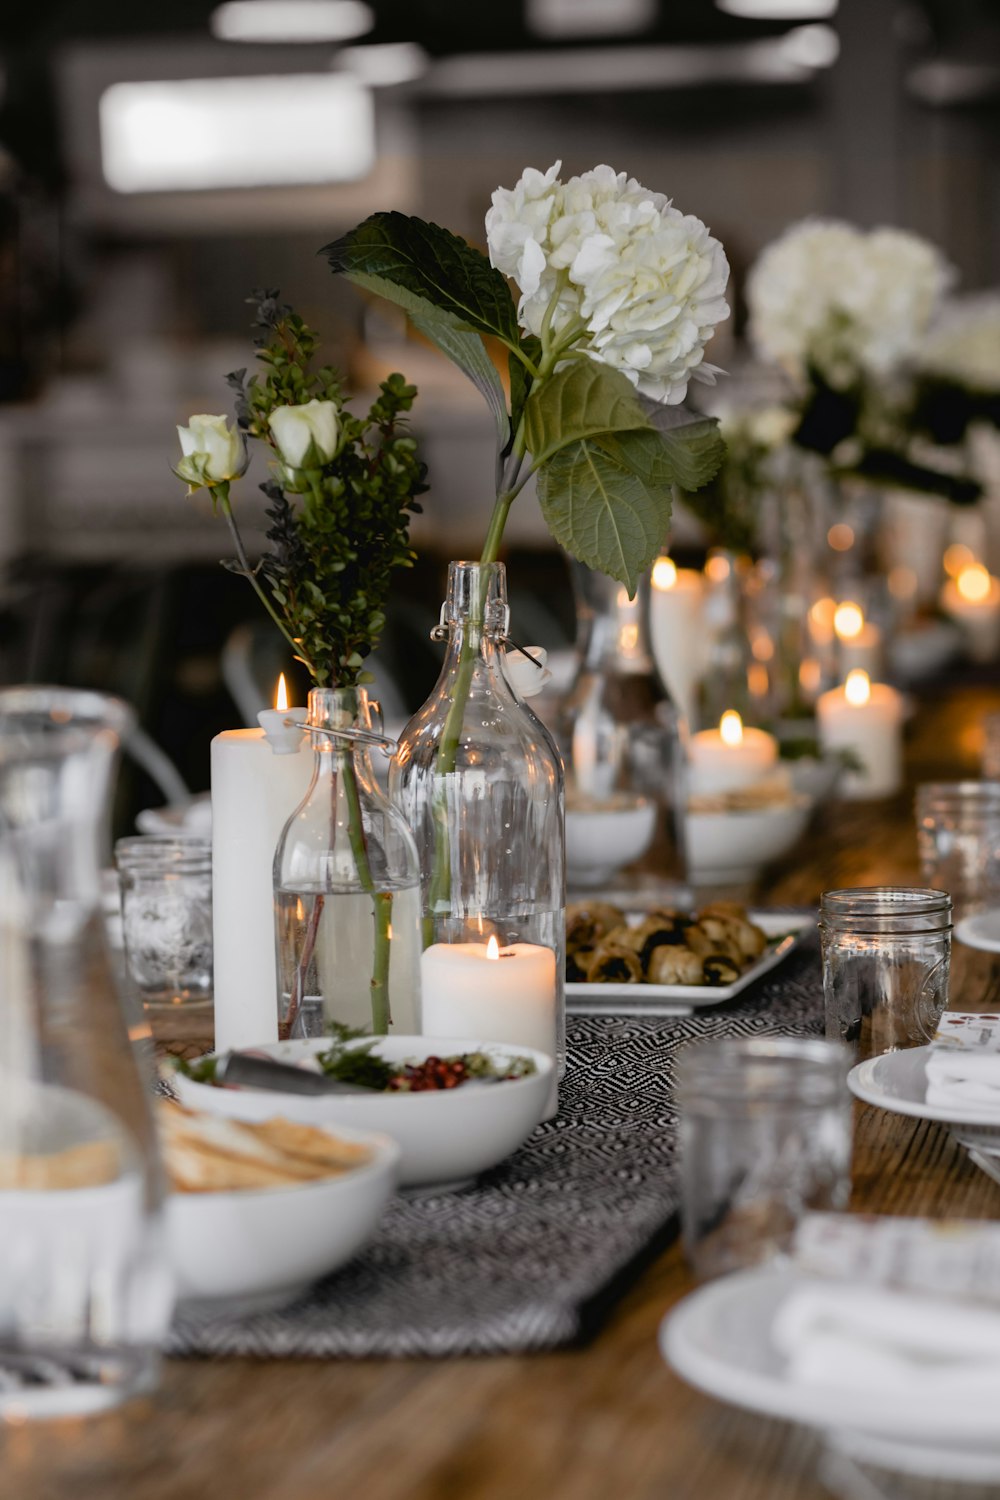 Fotografía de enfoque selectivo de flores blancas junto a una vela encendida sobre la mesa